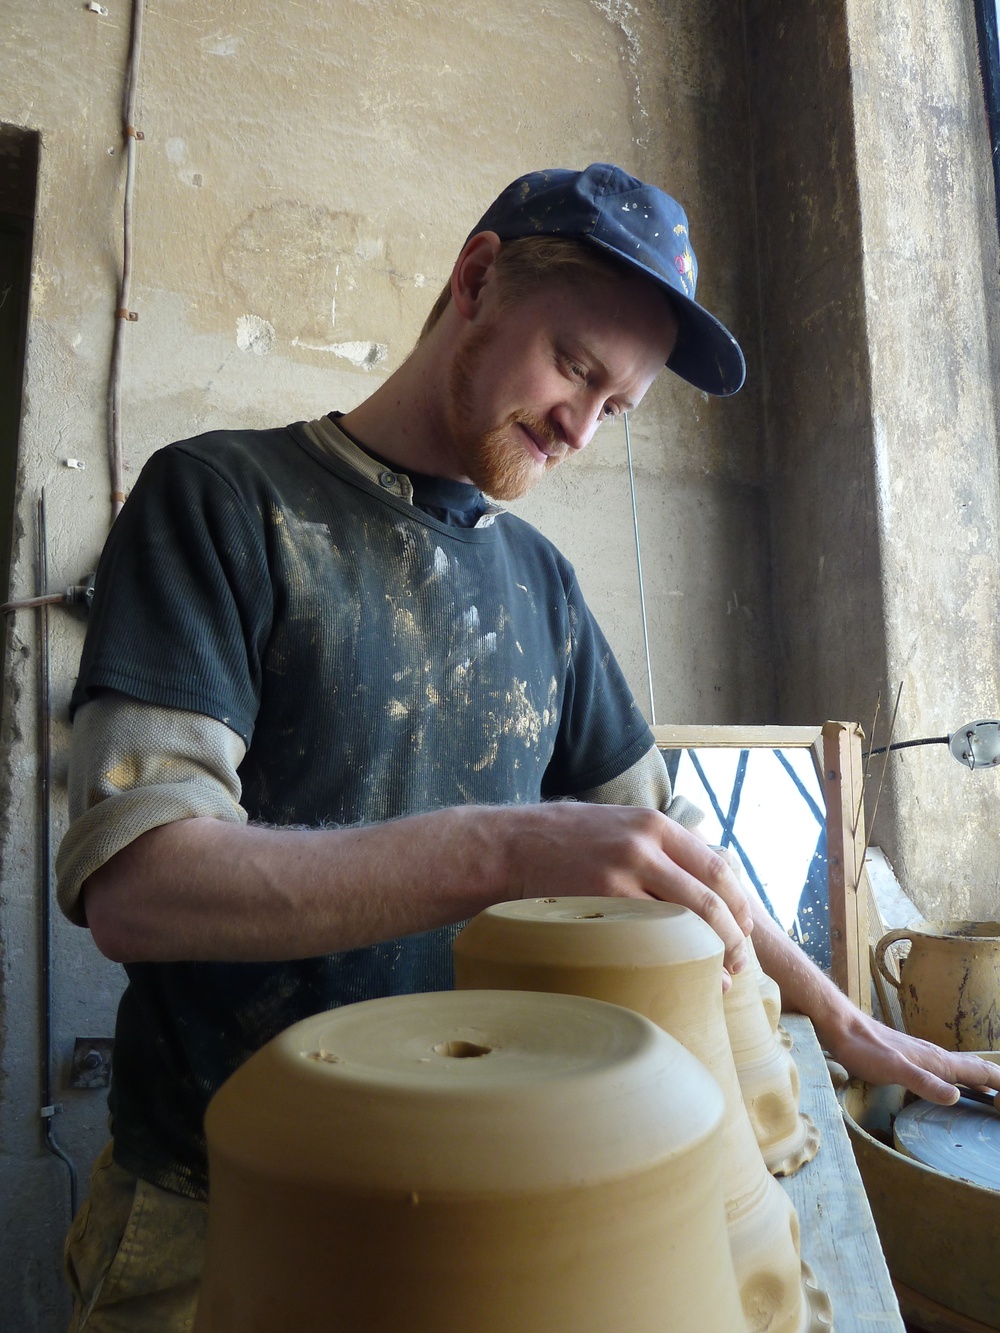 Alexander Krohn (krohnskrukmakeri.se) drejar keramik i lergods till vilken han hämtar inspiration från traditionellt lergods. Han är en av flera inbjudna gäster som kommer att visa sitt hantverk under Östarpsdagen. Foto: @ Krohns krukmakeri